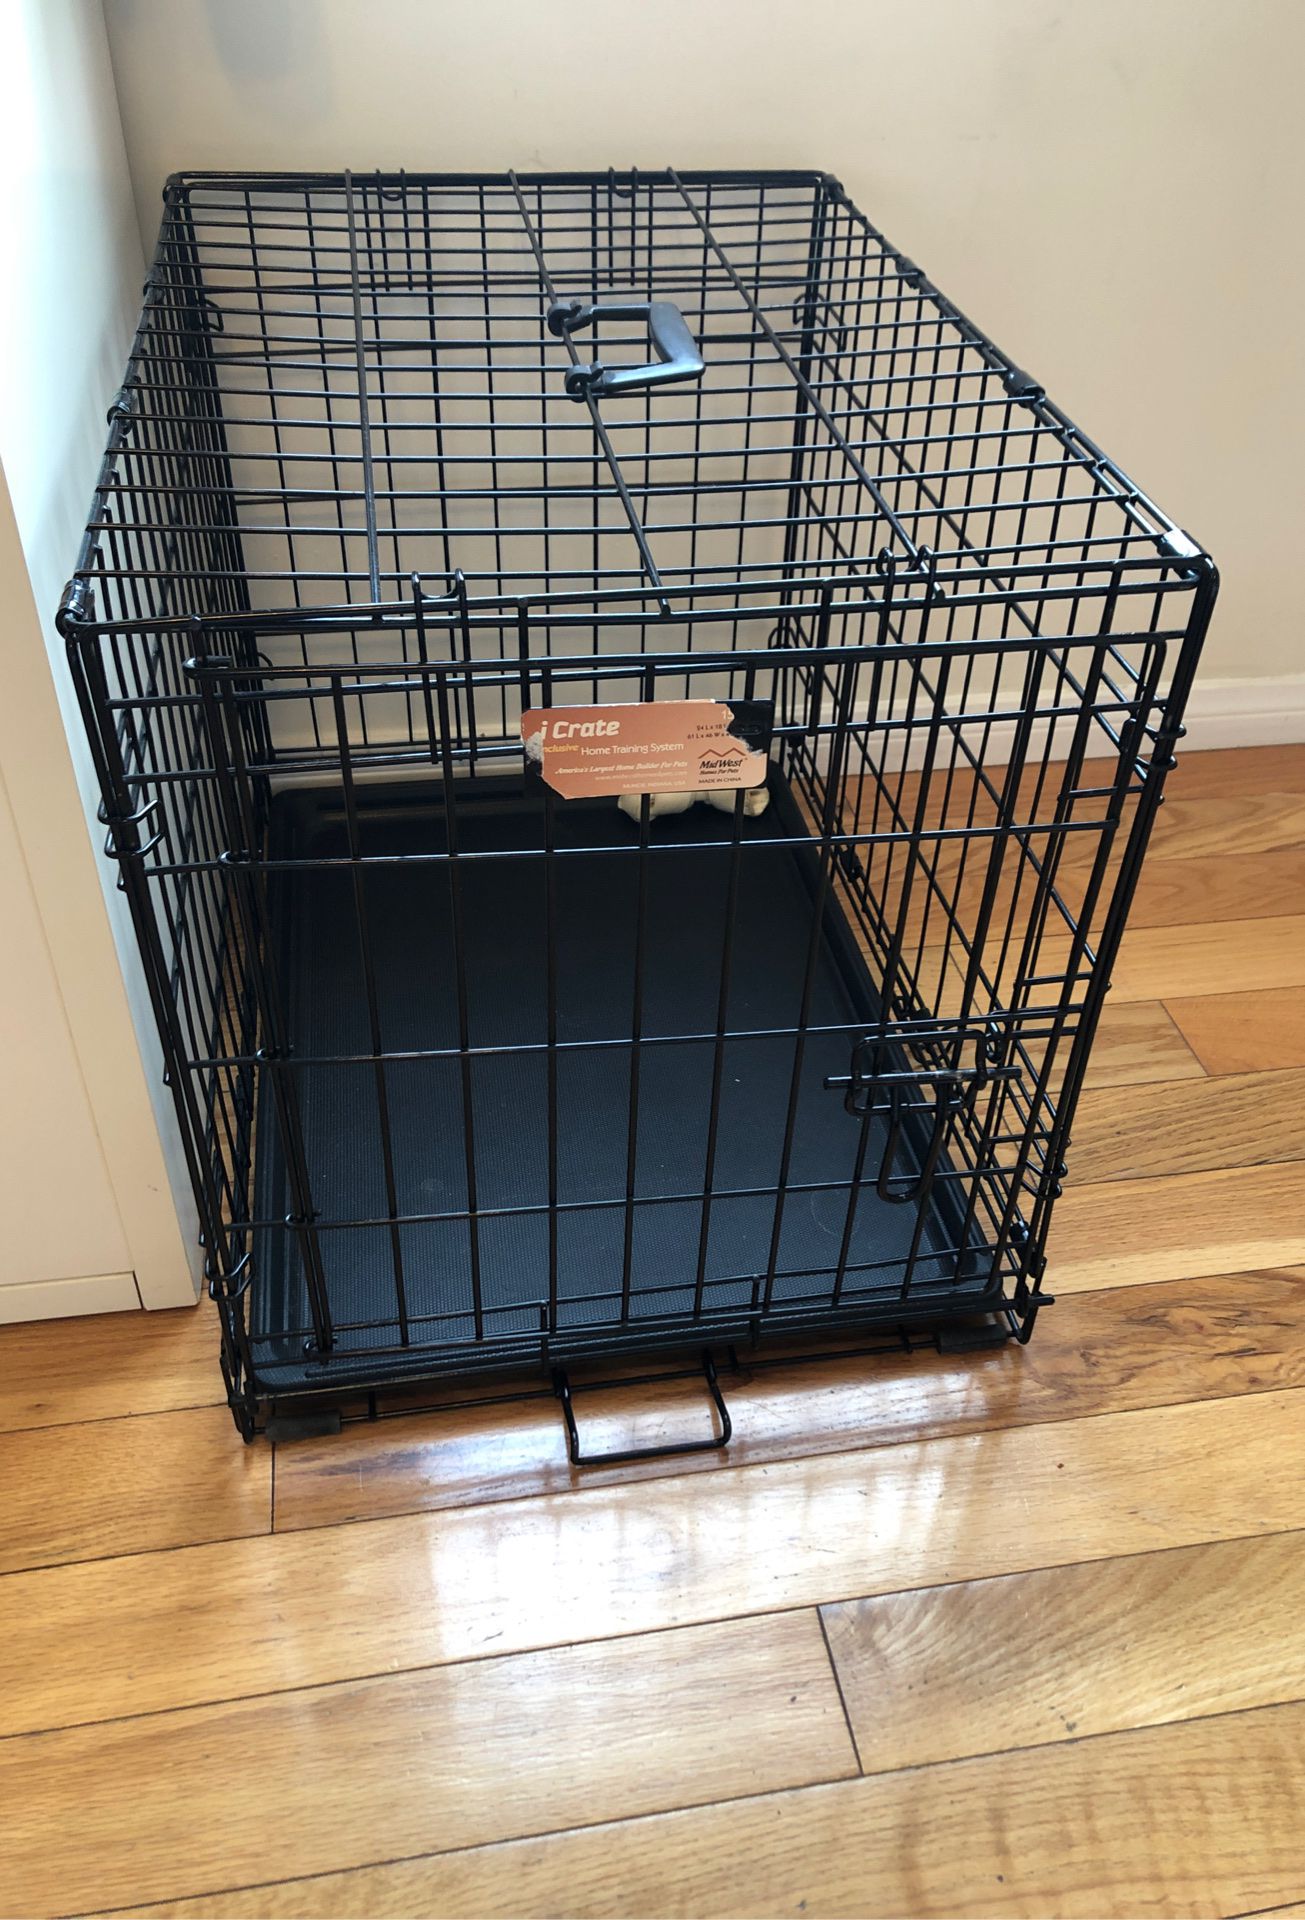 Medium size dog crate - barely used